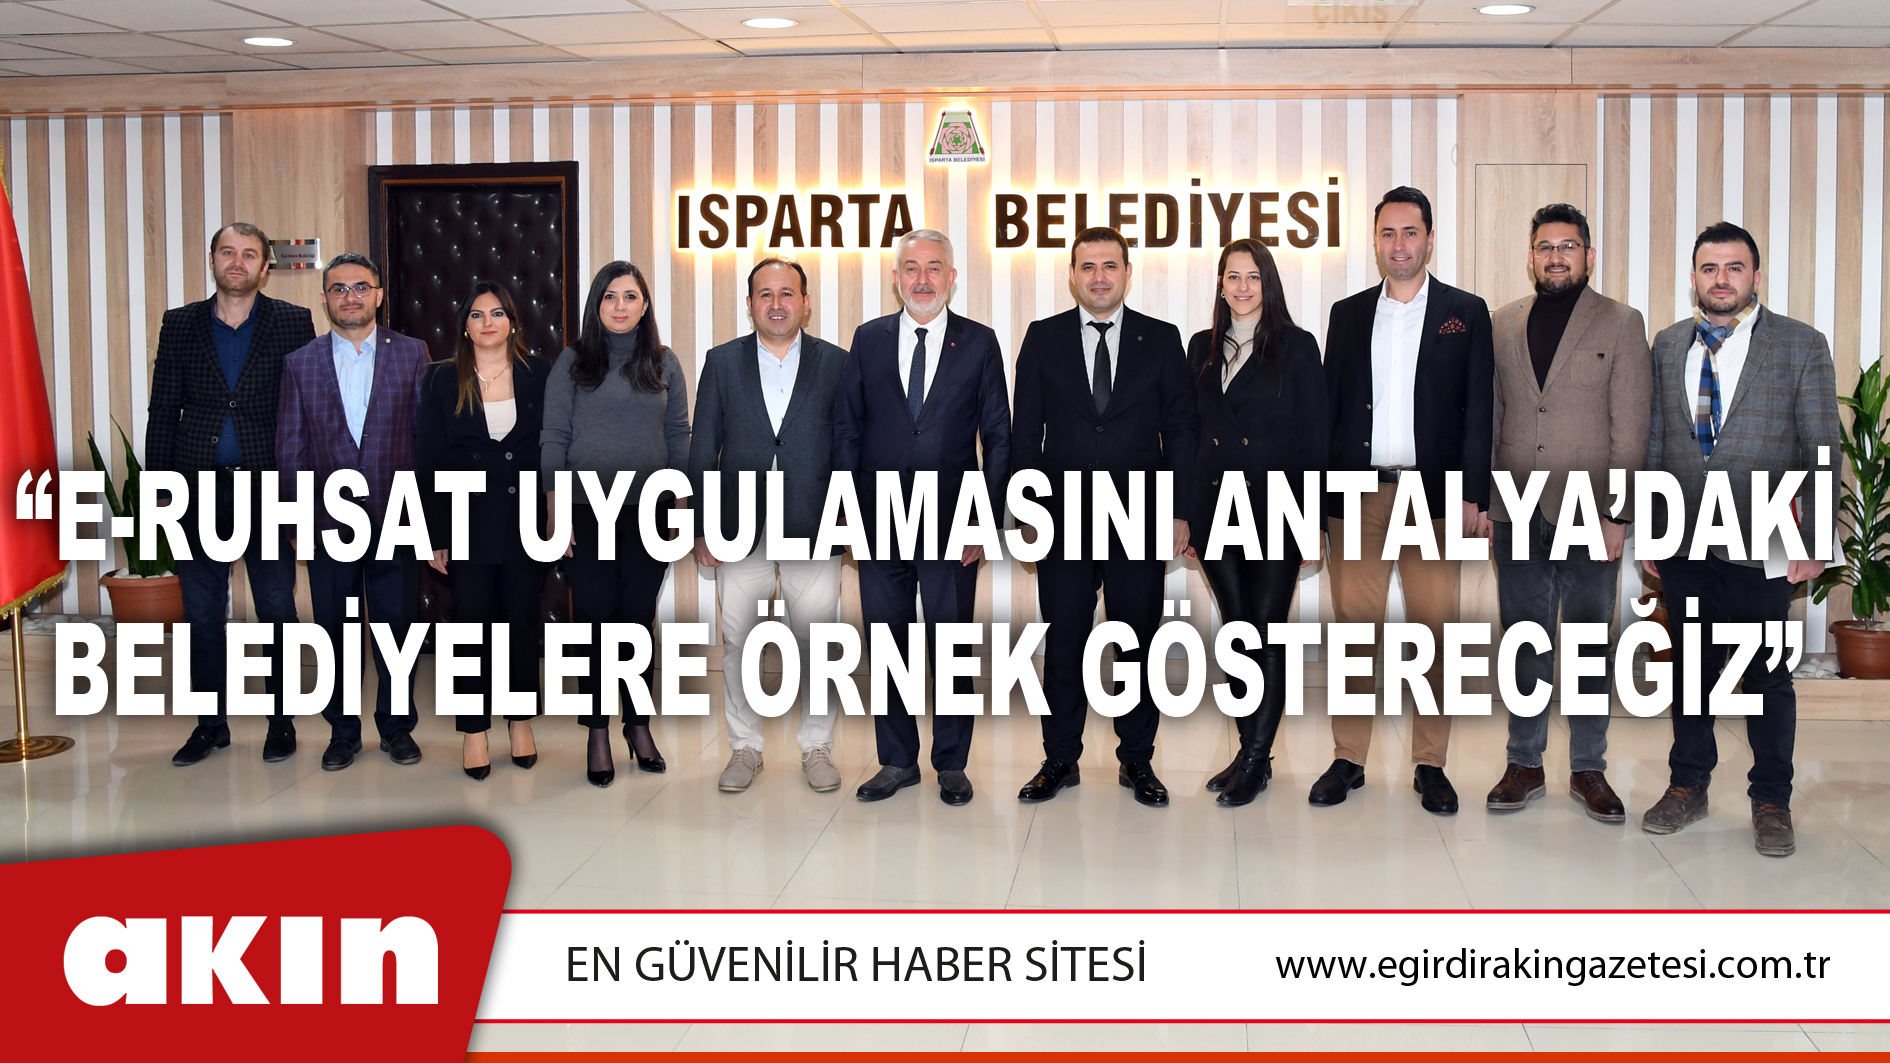 eğirdir haber,akın gazetesi,egirdir haberler,son dakika,“E-Ruhsat Uygulamasını Antalya’daki Belediyelere Örnek Göstereceğiz”